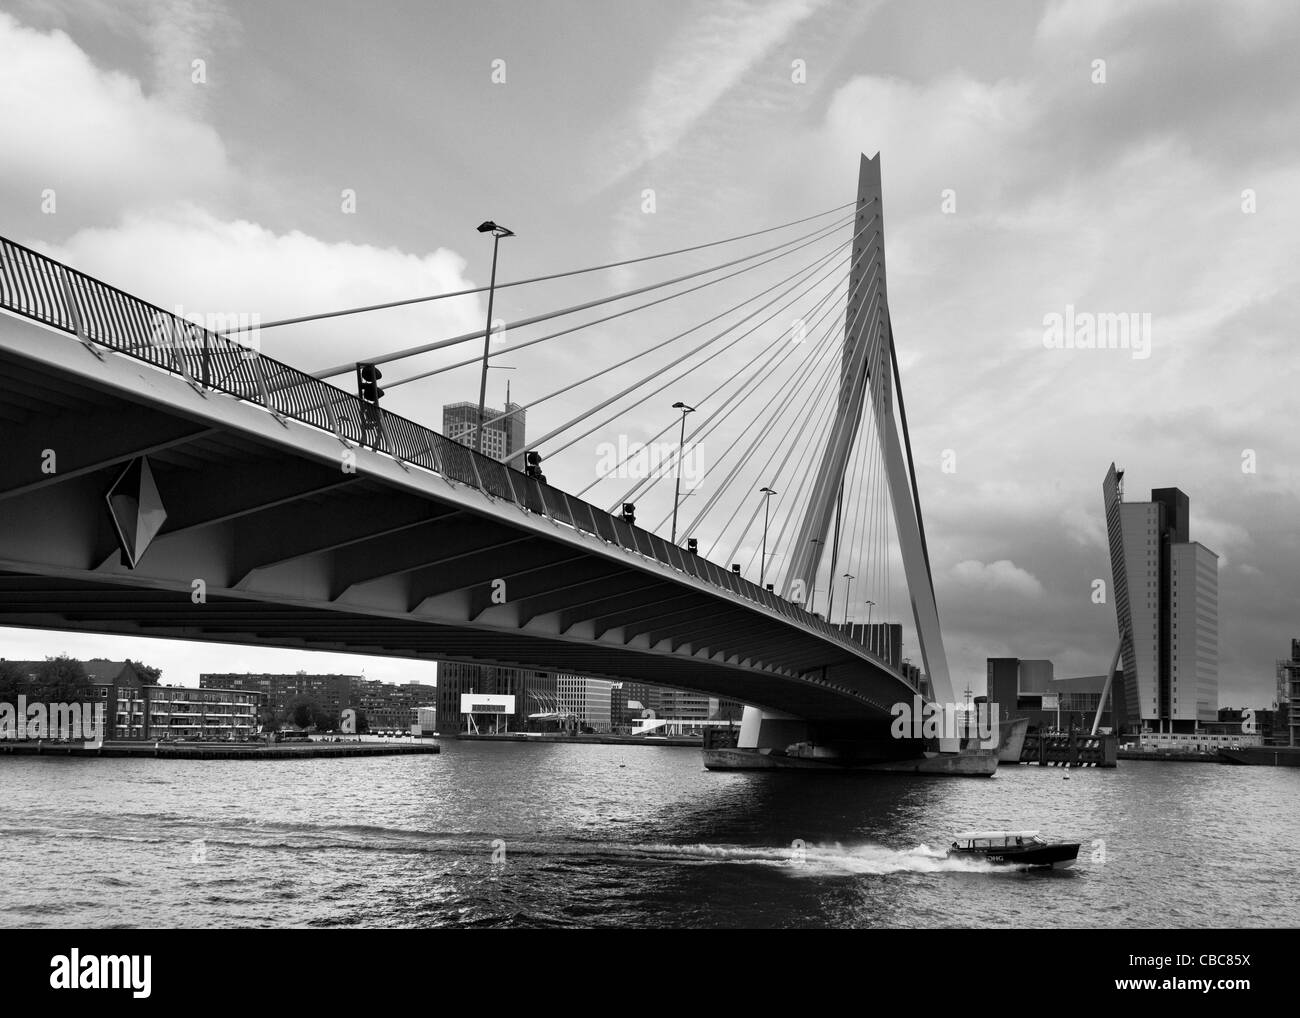 Con un taxi acqueo passa sotto il ponte di Erasmus di Rotterdam, Paesi Bassi - immagine monocromatica Foto Stock